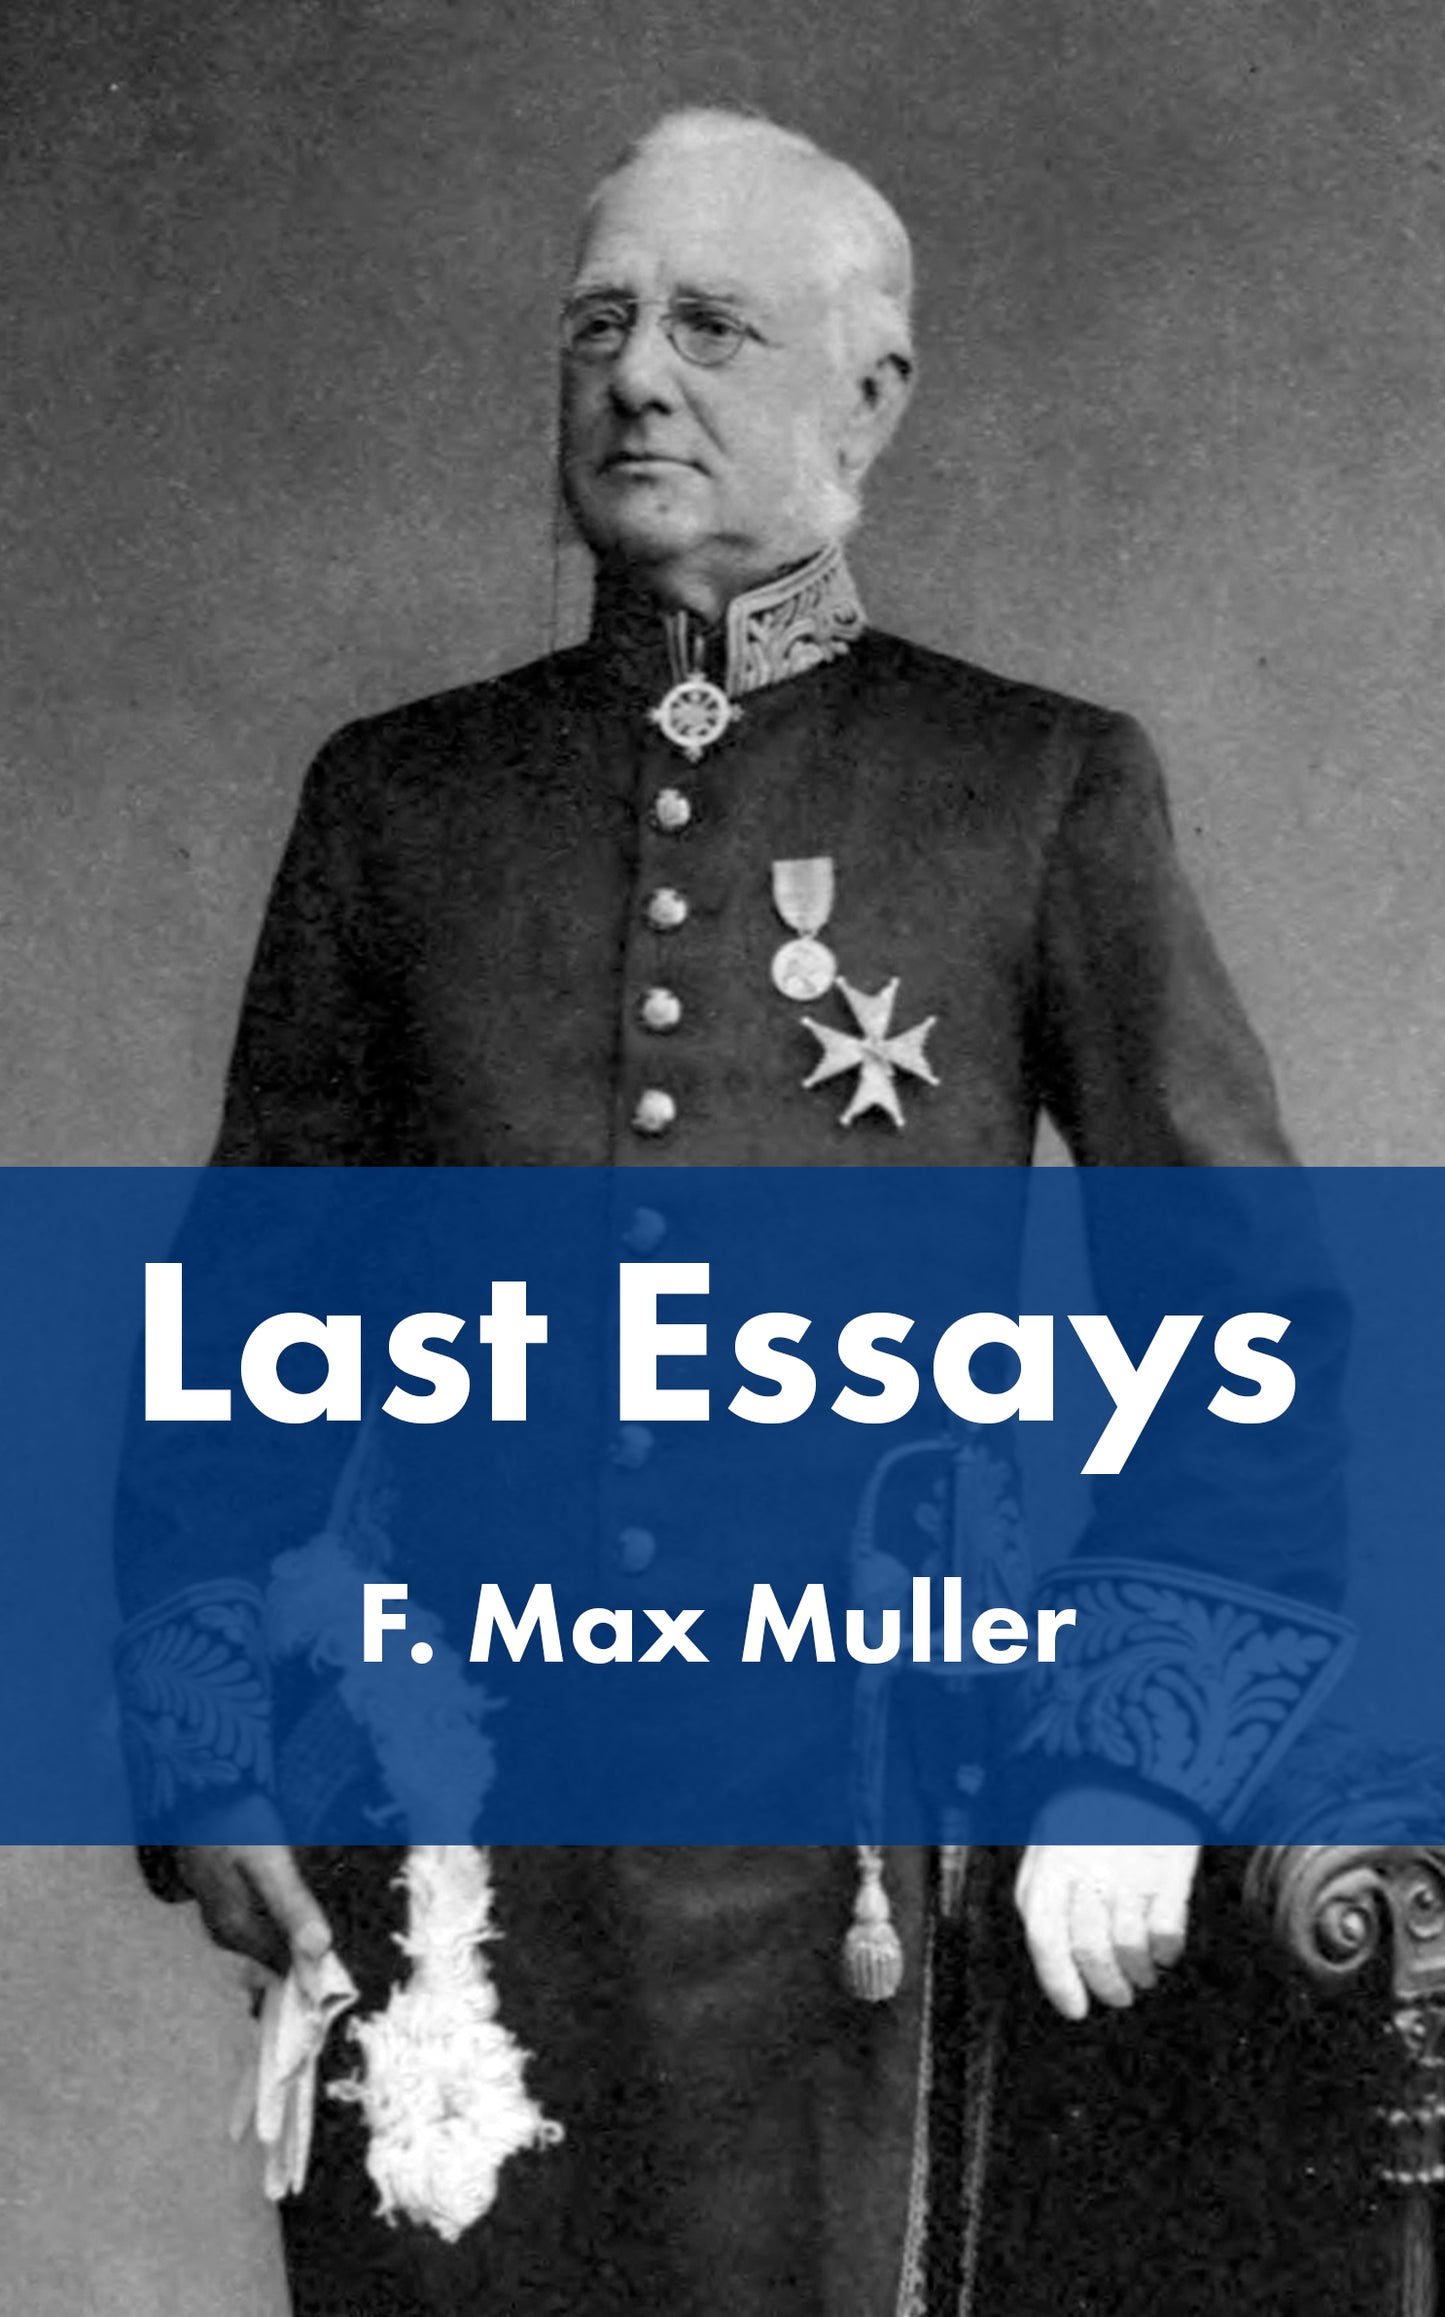 Last Essays of F. Max Muller